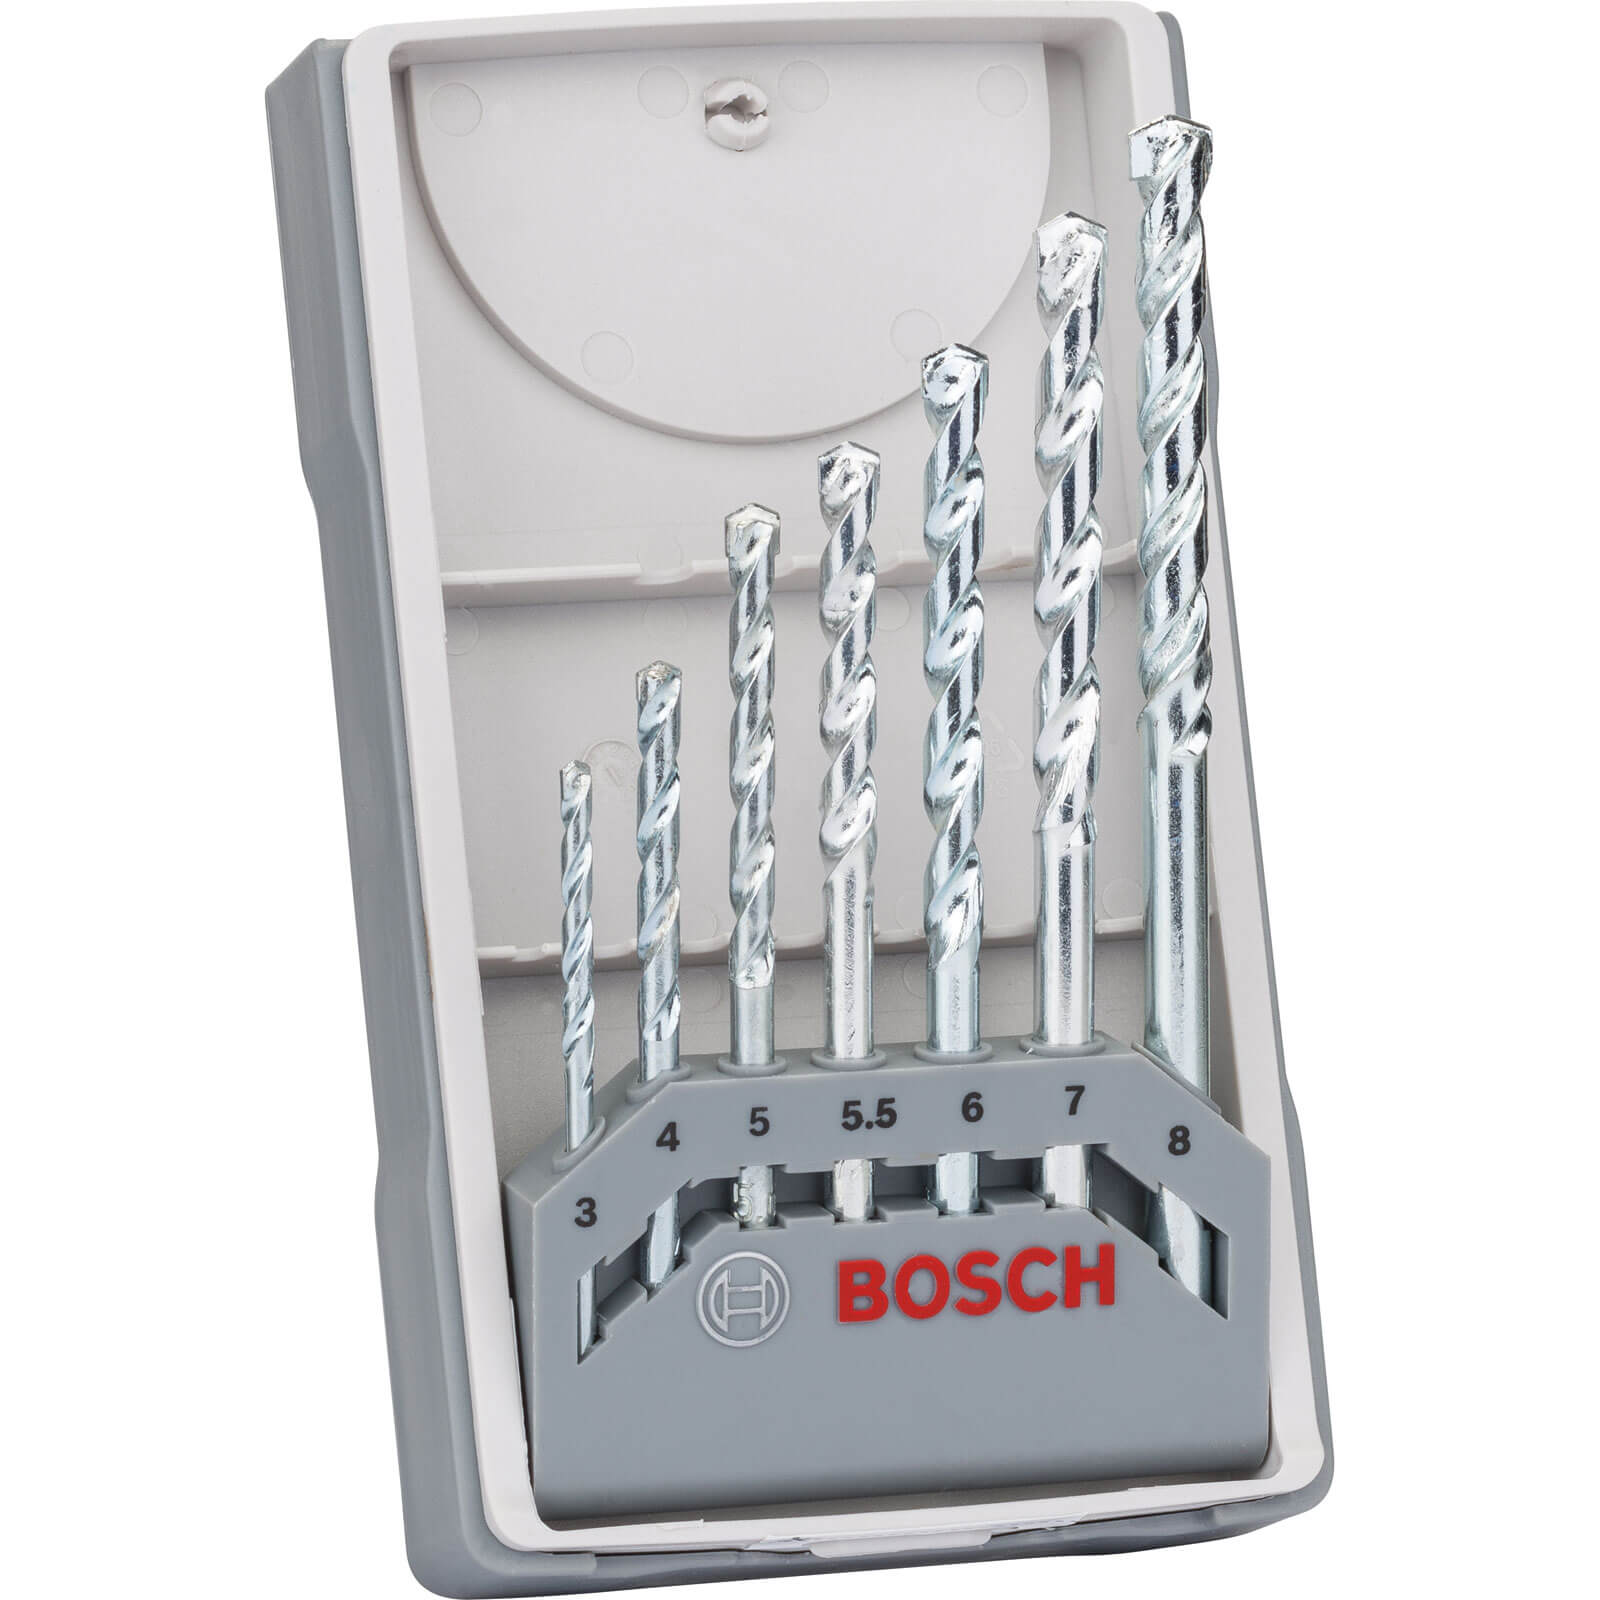 Photo of Bosch 7 Piece Impact Masonry Drill Bit Set